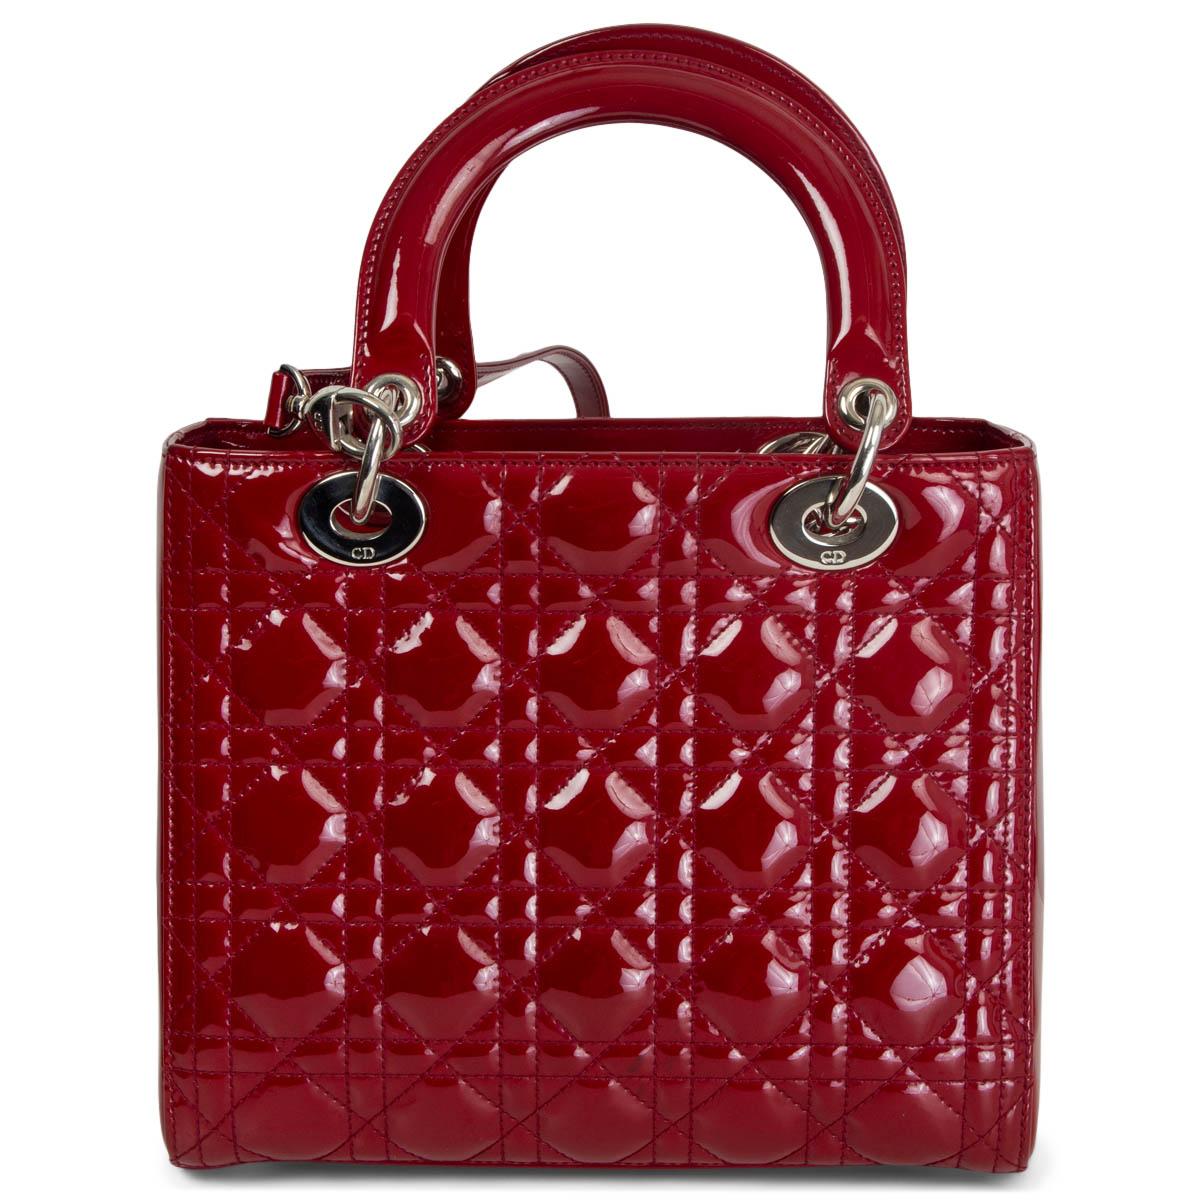 lady dior burgundy bag